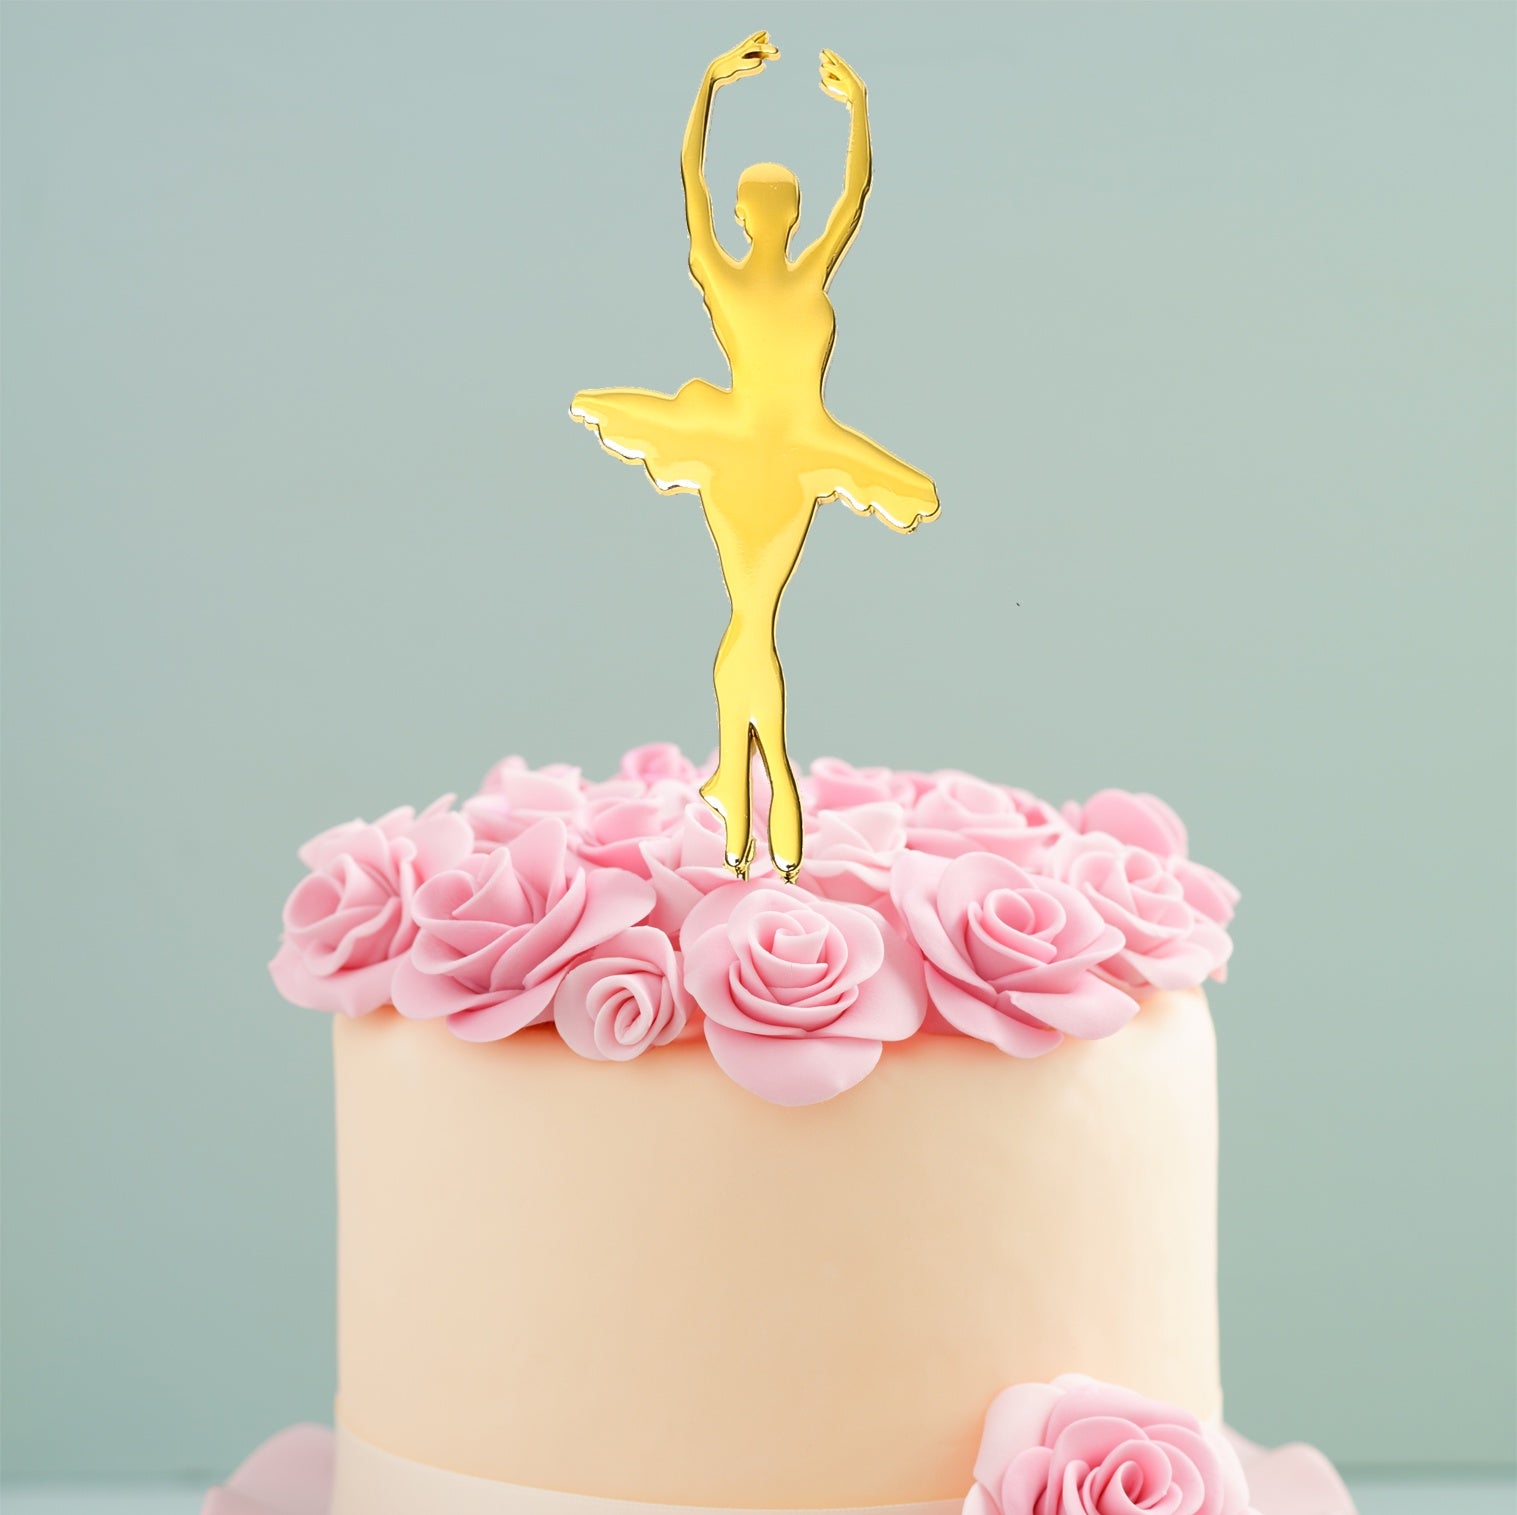 Birthday Cake & Spinning Ballerina (Melody: Happy Birthday)